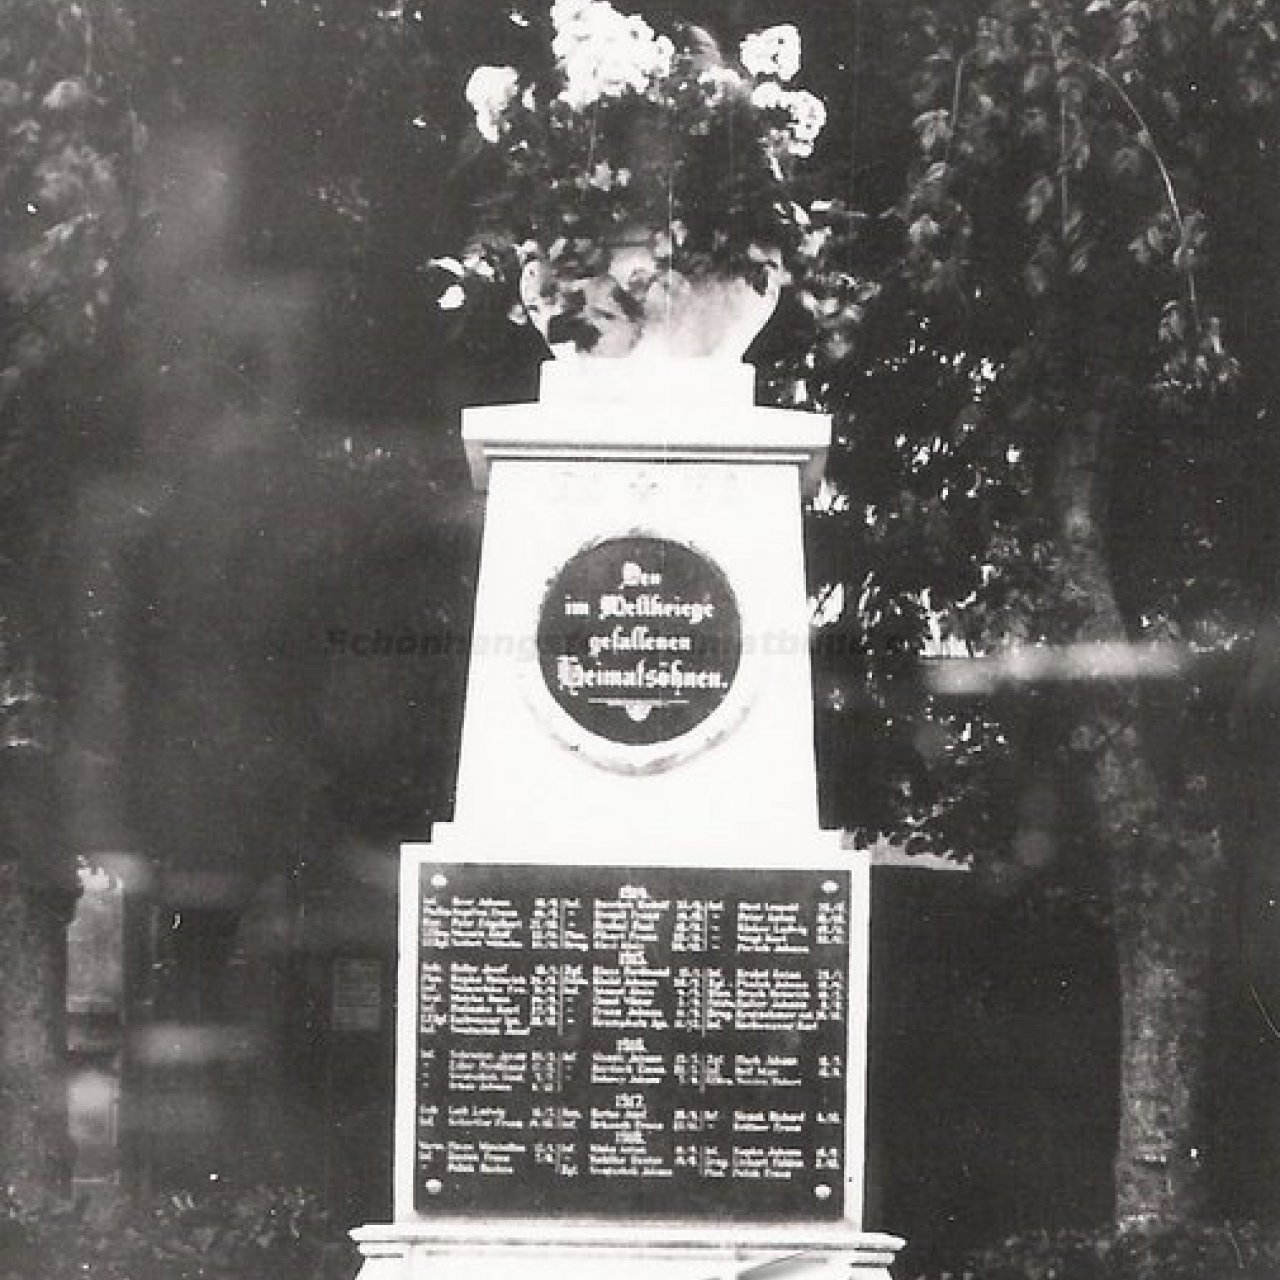 Úsov - Památník padlým v 1. světové válce